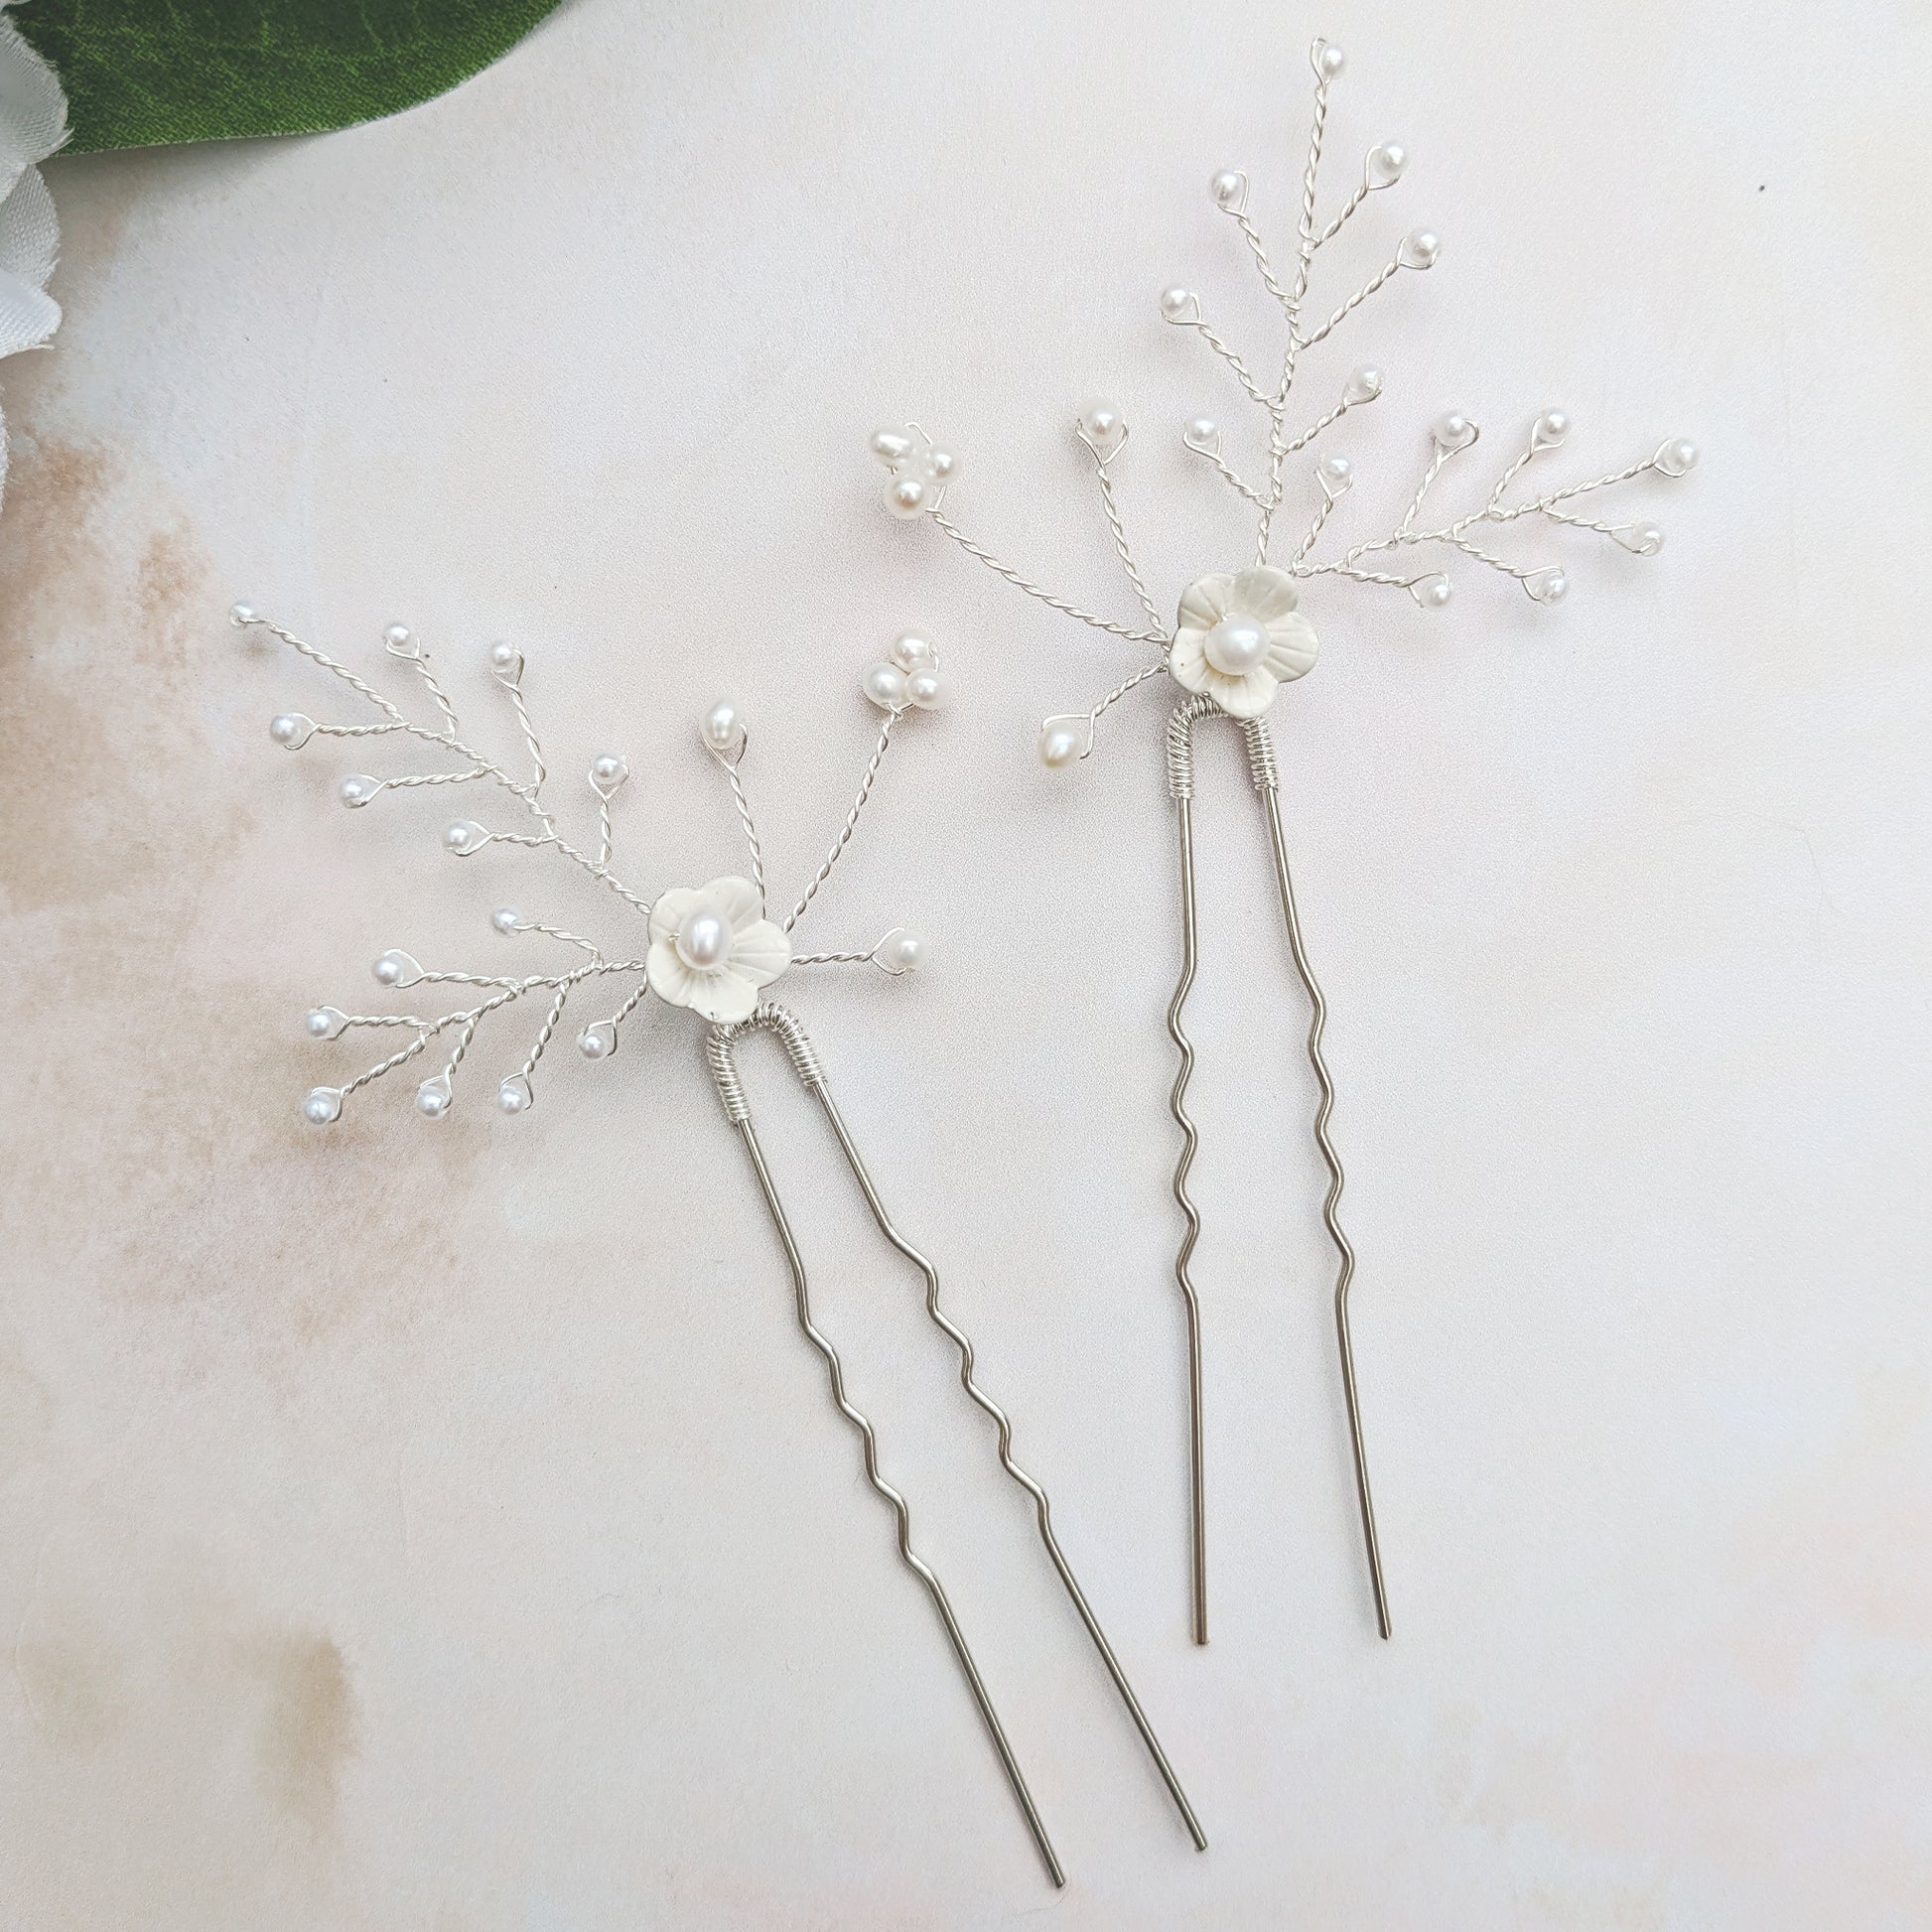 Modern white floral hair pins - Susie Warner